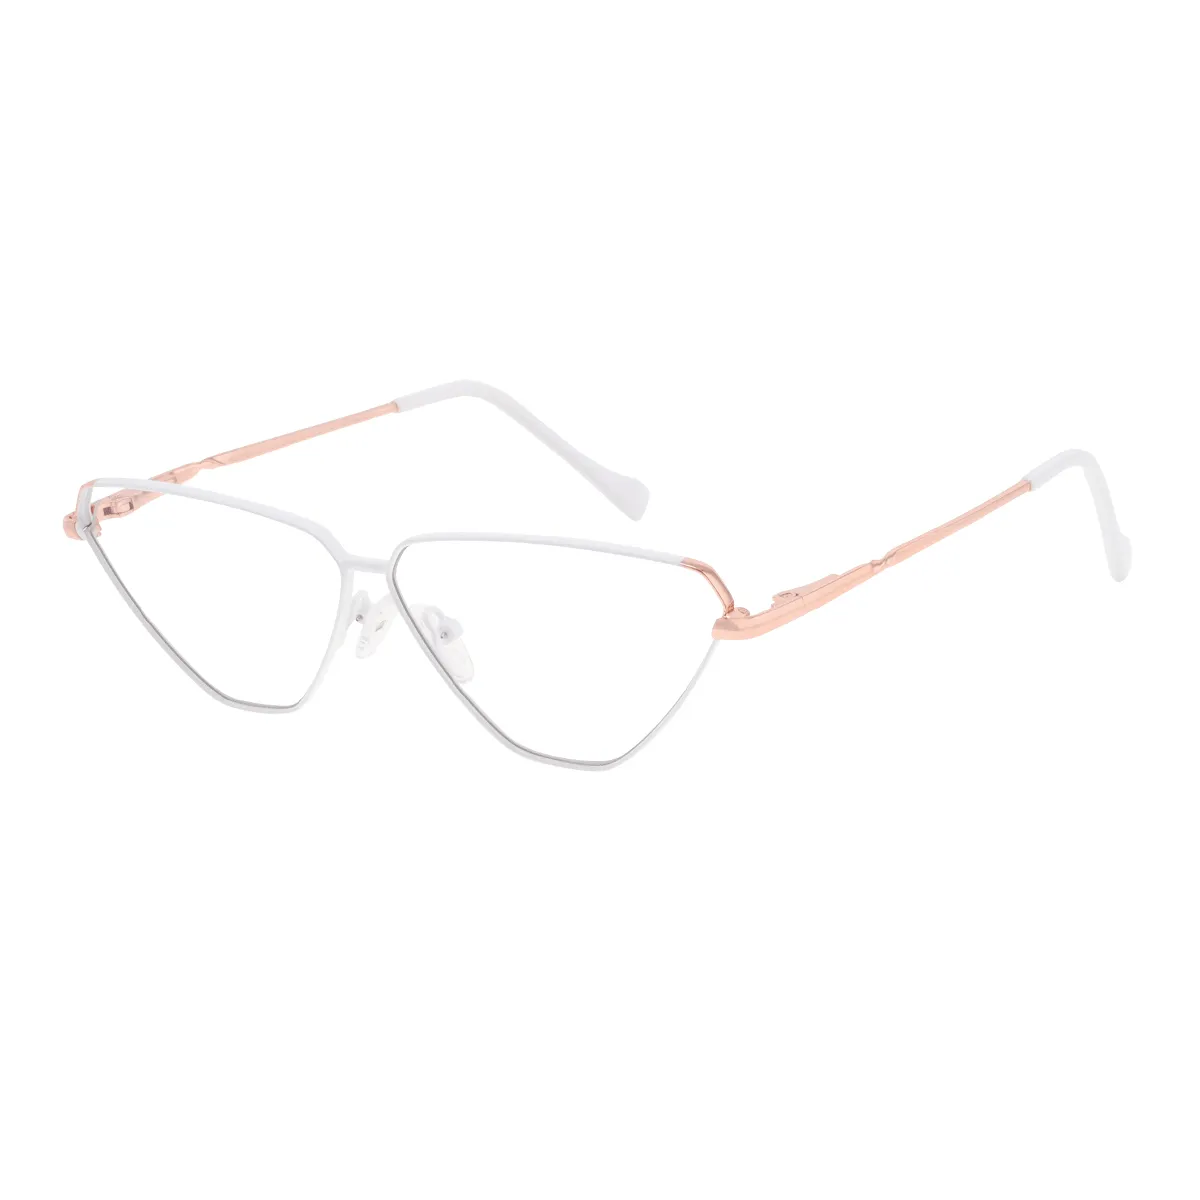 Mercer - Geometric White-gold Glasses for Women